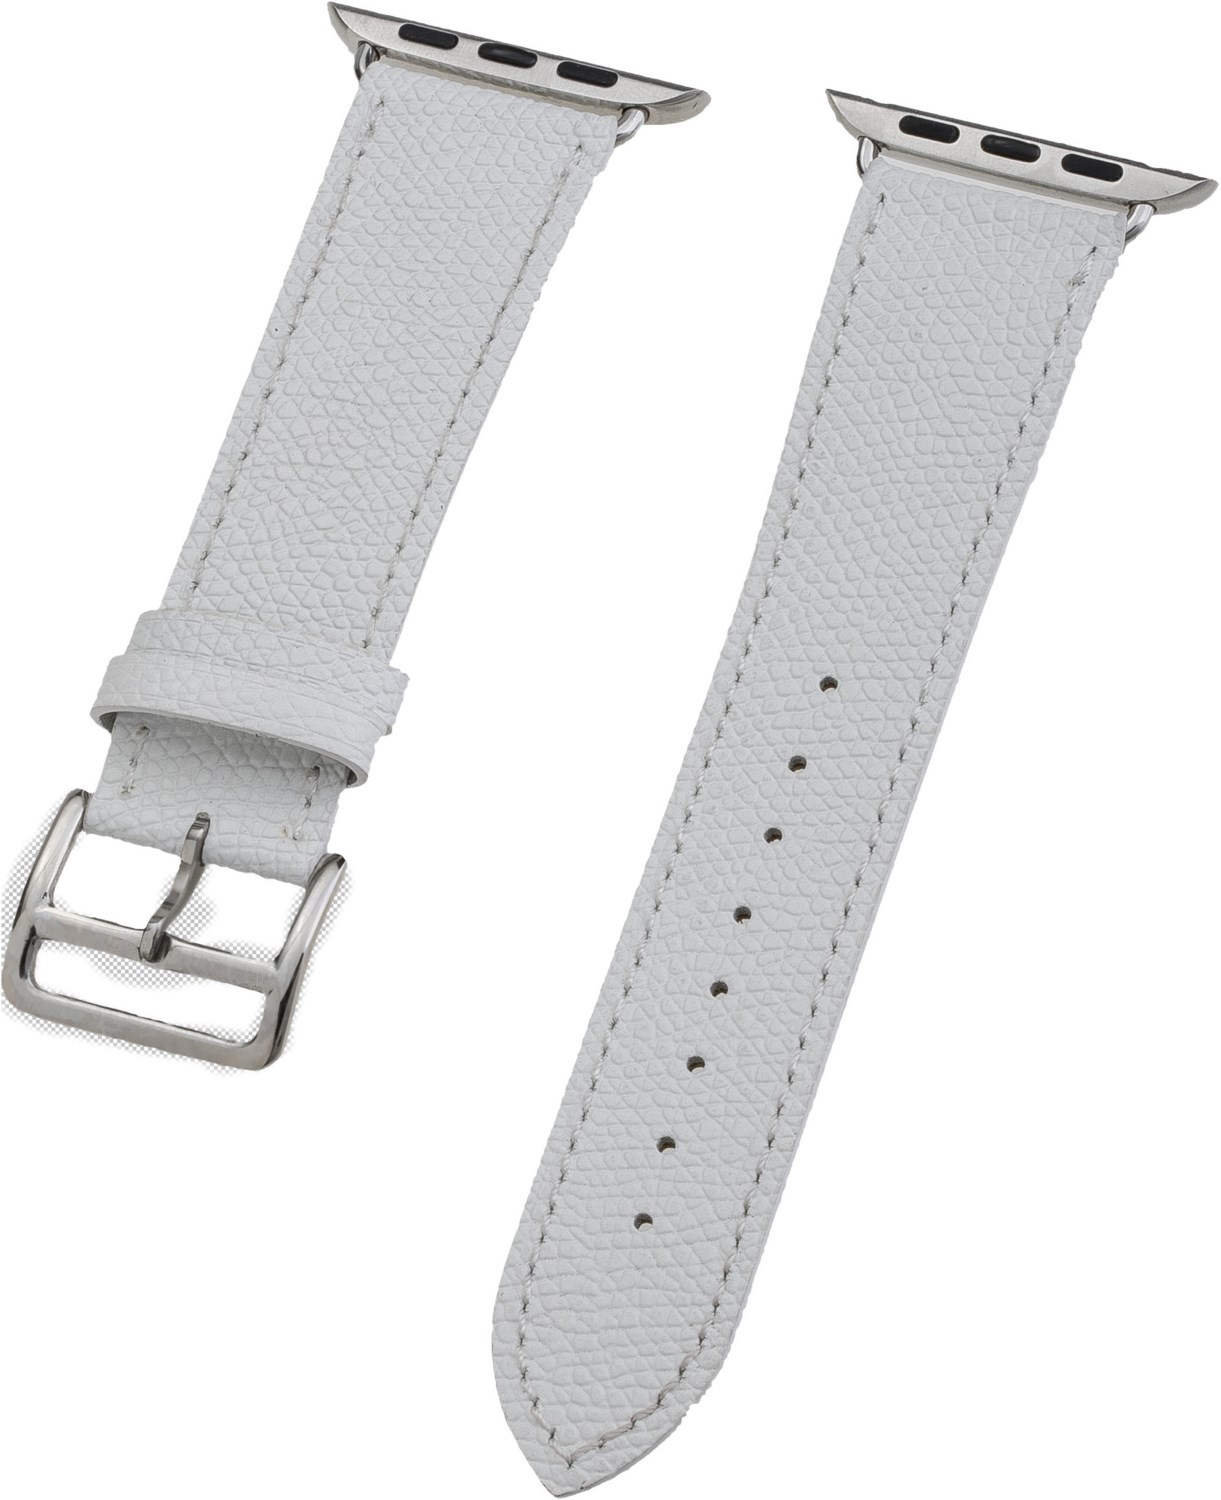 Watch Band Leder für Apple Watch (44mm/42mm) weiß